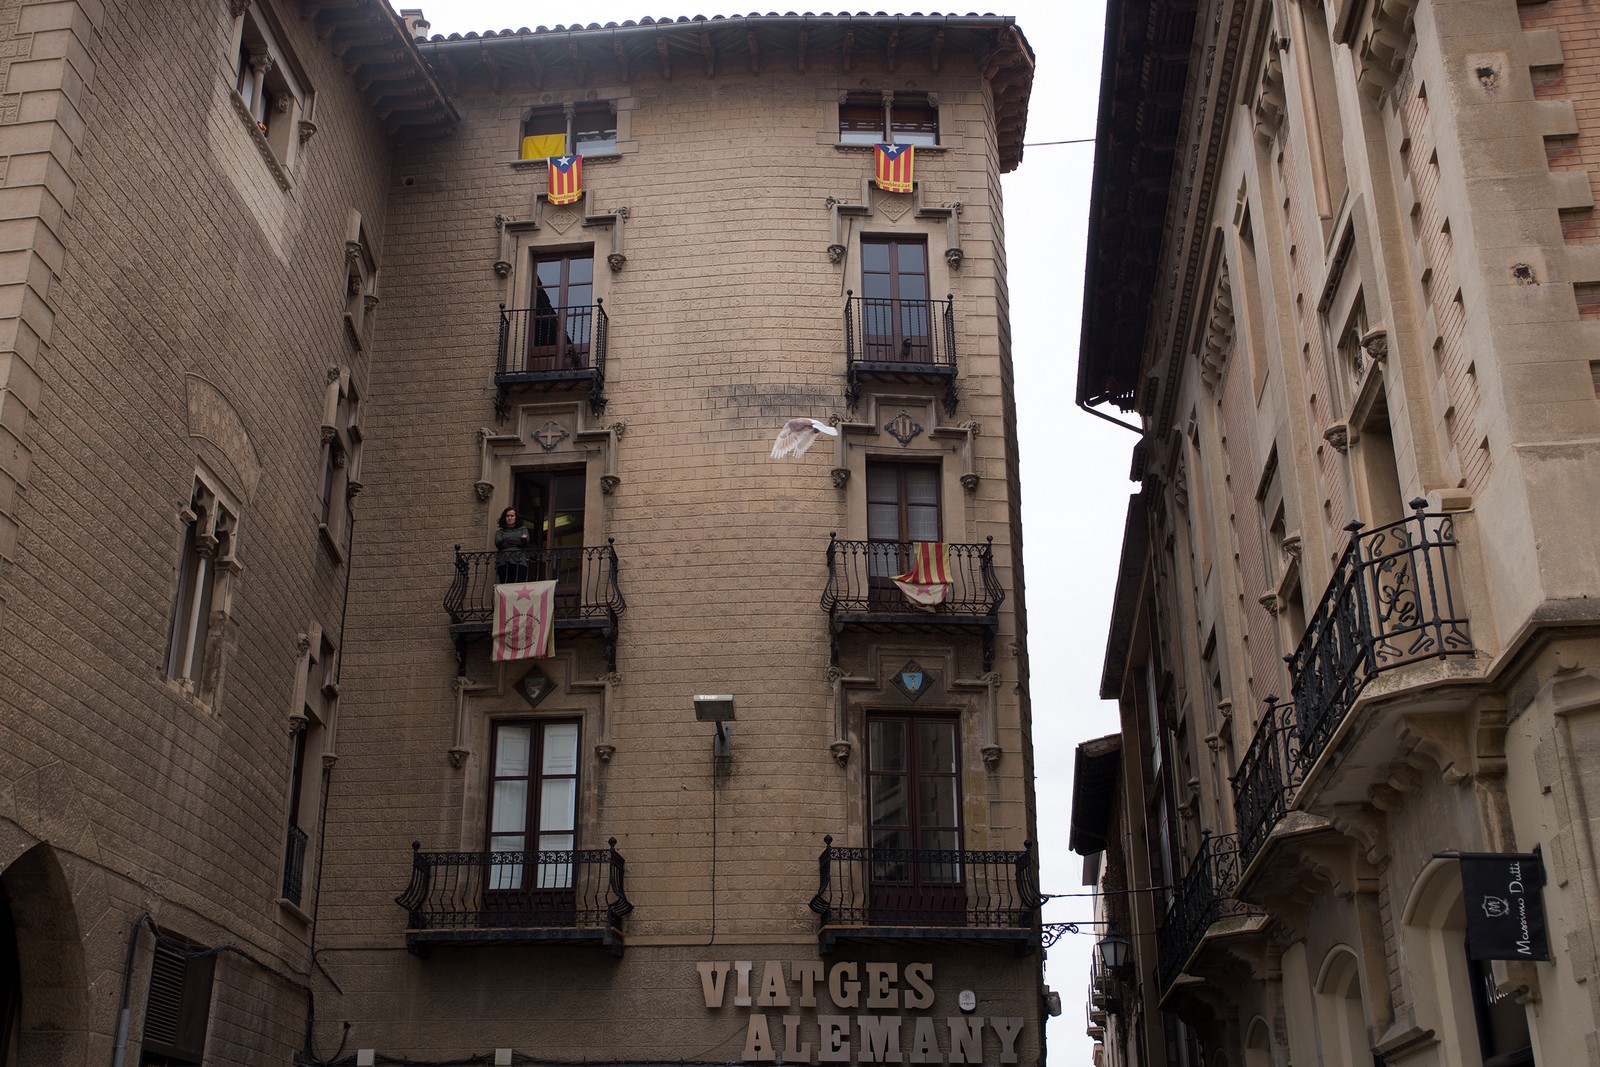 Средневековые города Каталонии в коллекции путешествий A2 Partners - Вик (Vic)